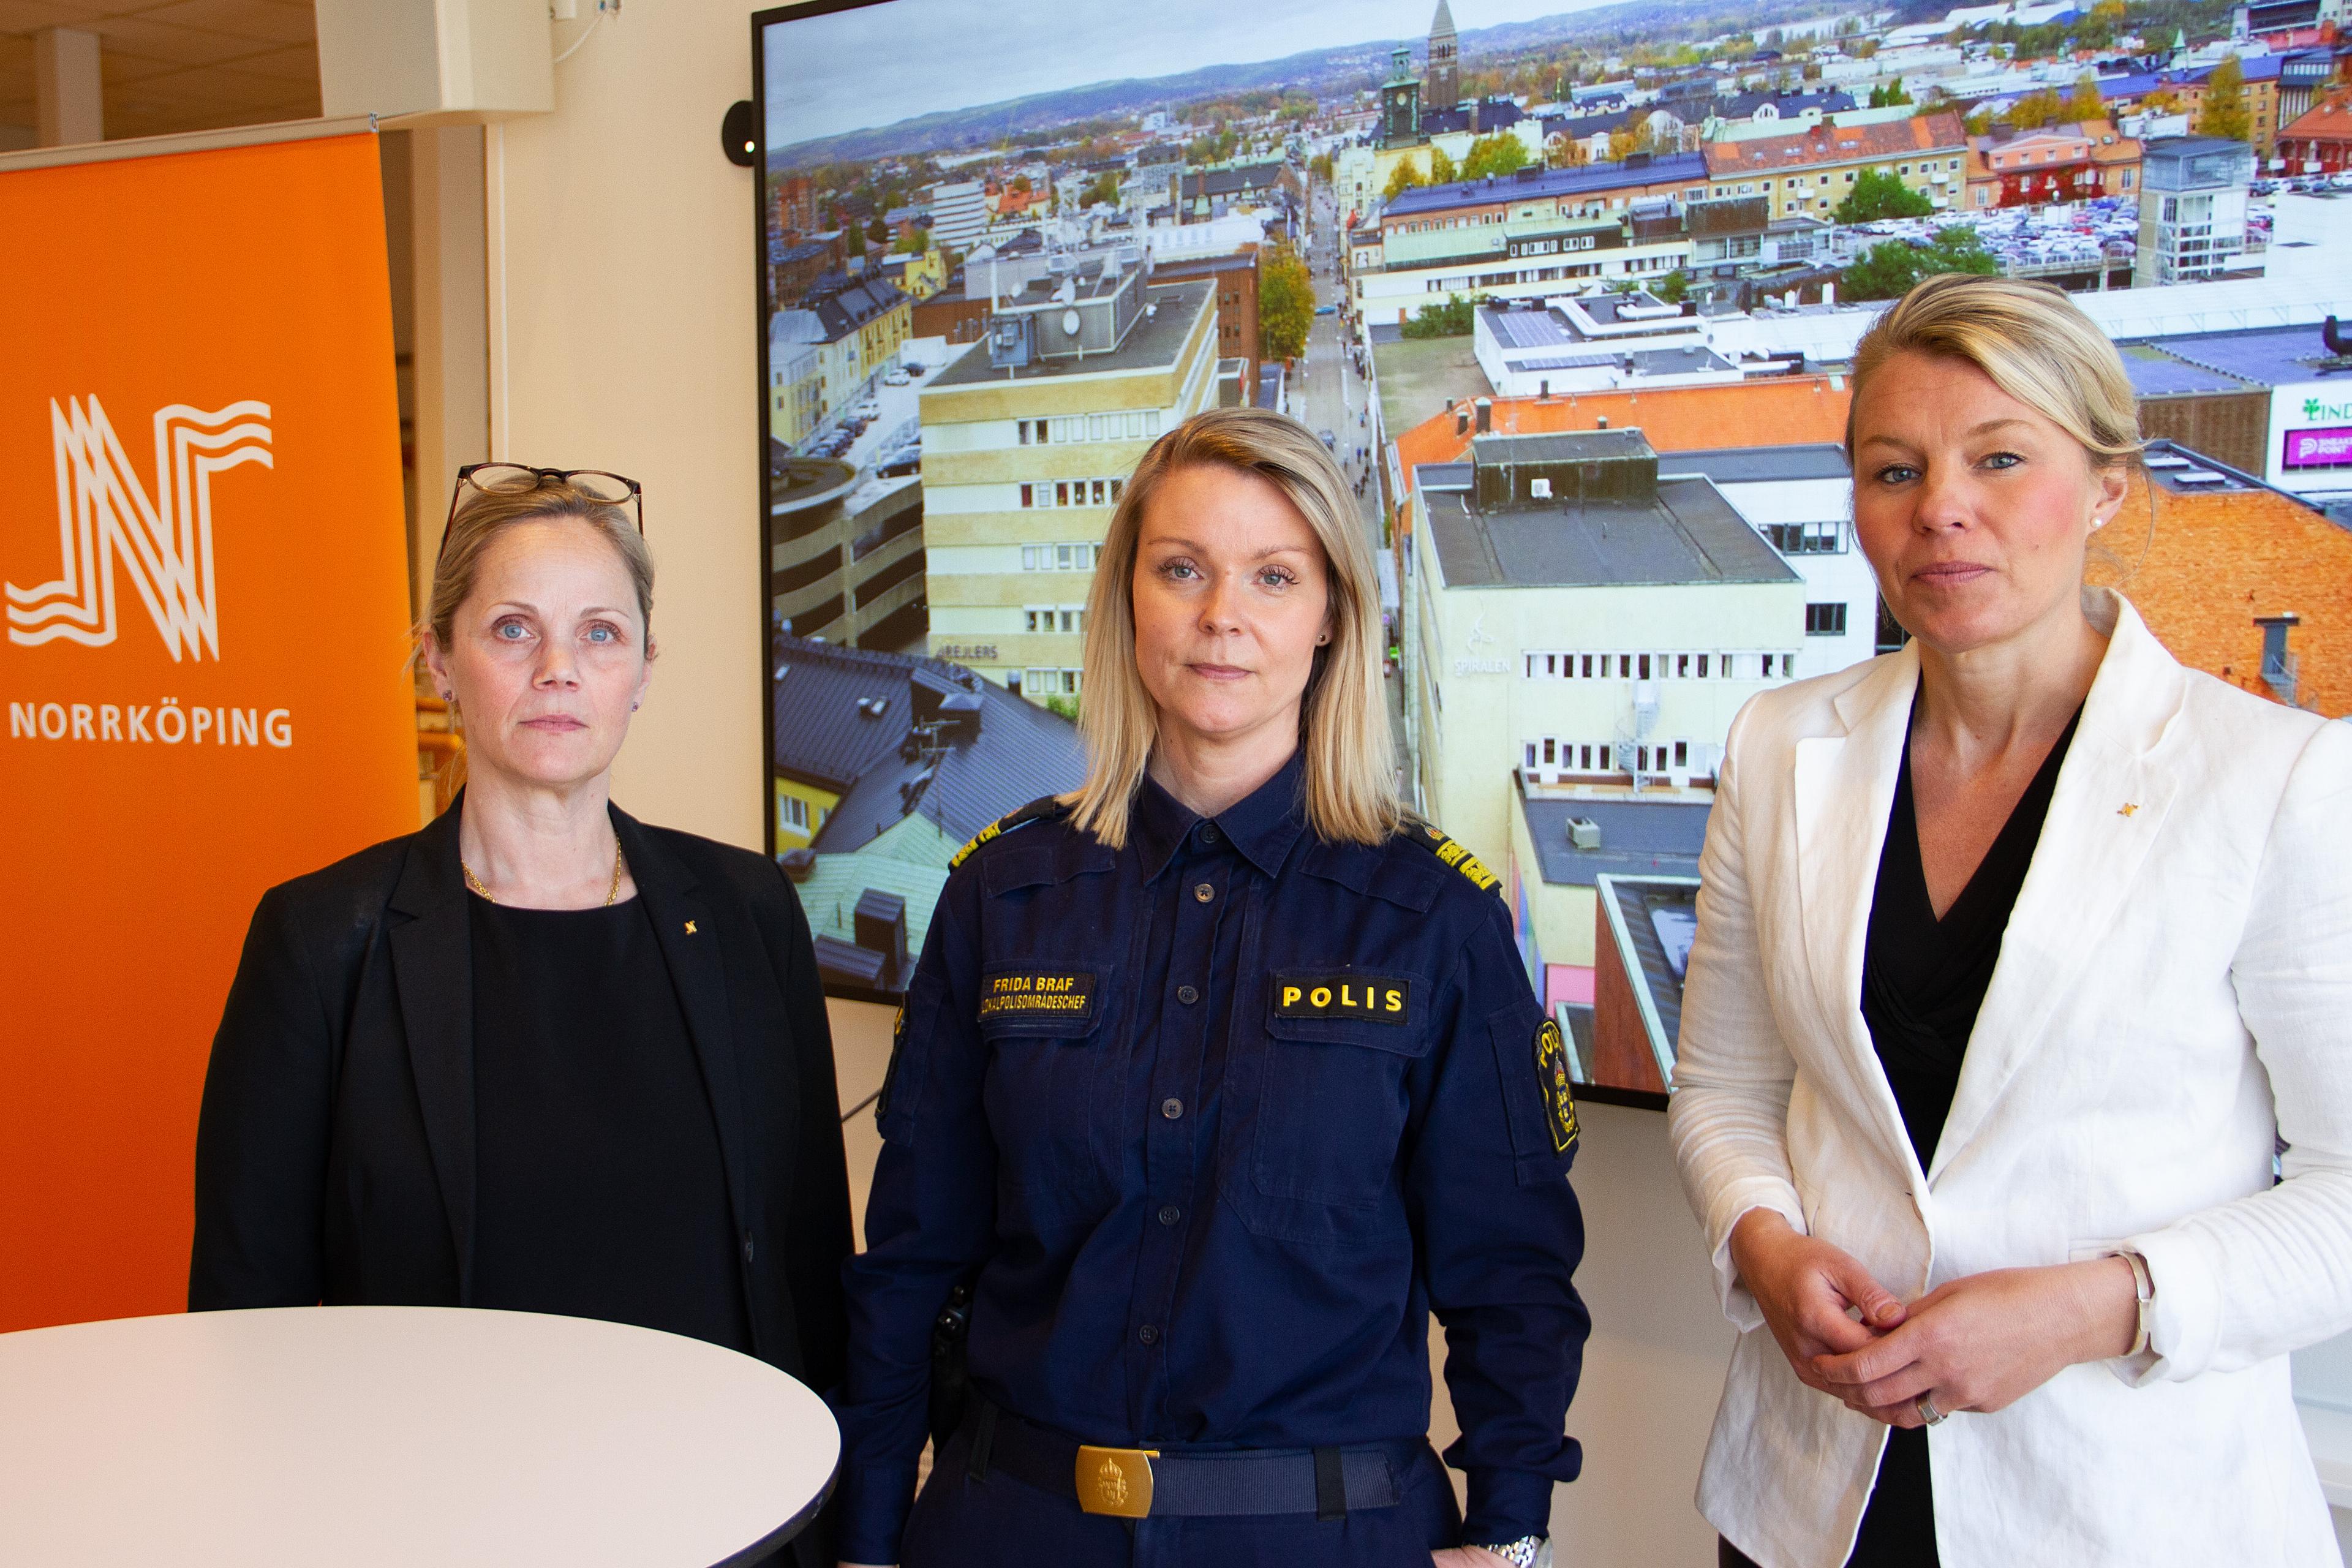 På bilden ses Anna Selander, kommundirektör, Frida Braf, lokalpolisområdeschef, och Sophia Jarl (M), kommunstyrelsens ordförande, i samband med en pressträff. Foto: Norrköpings kommun